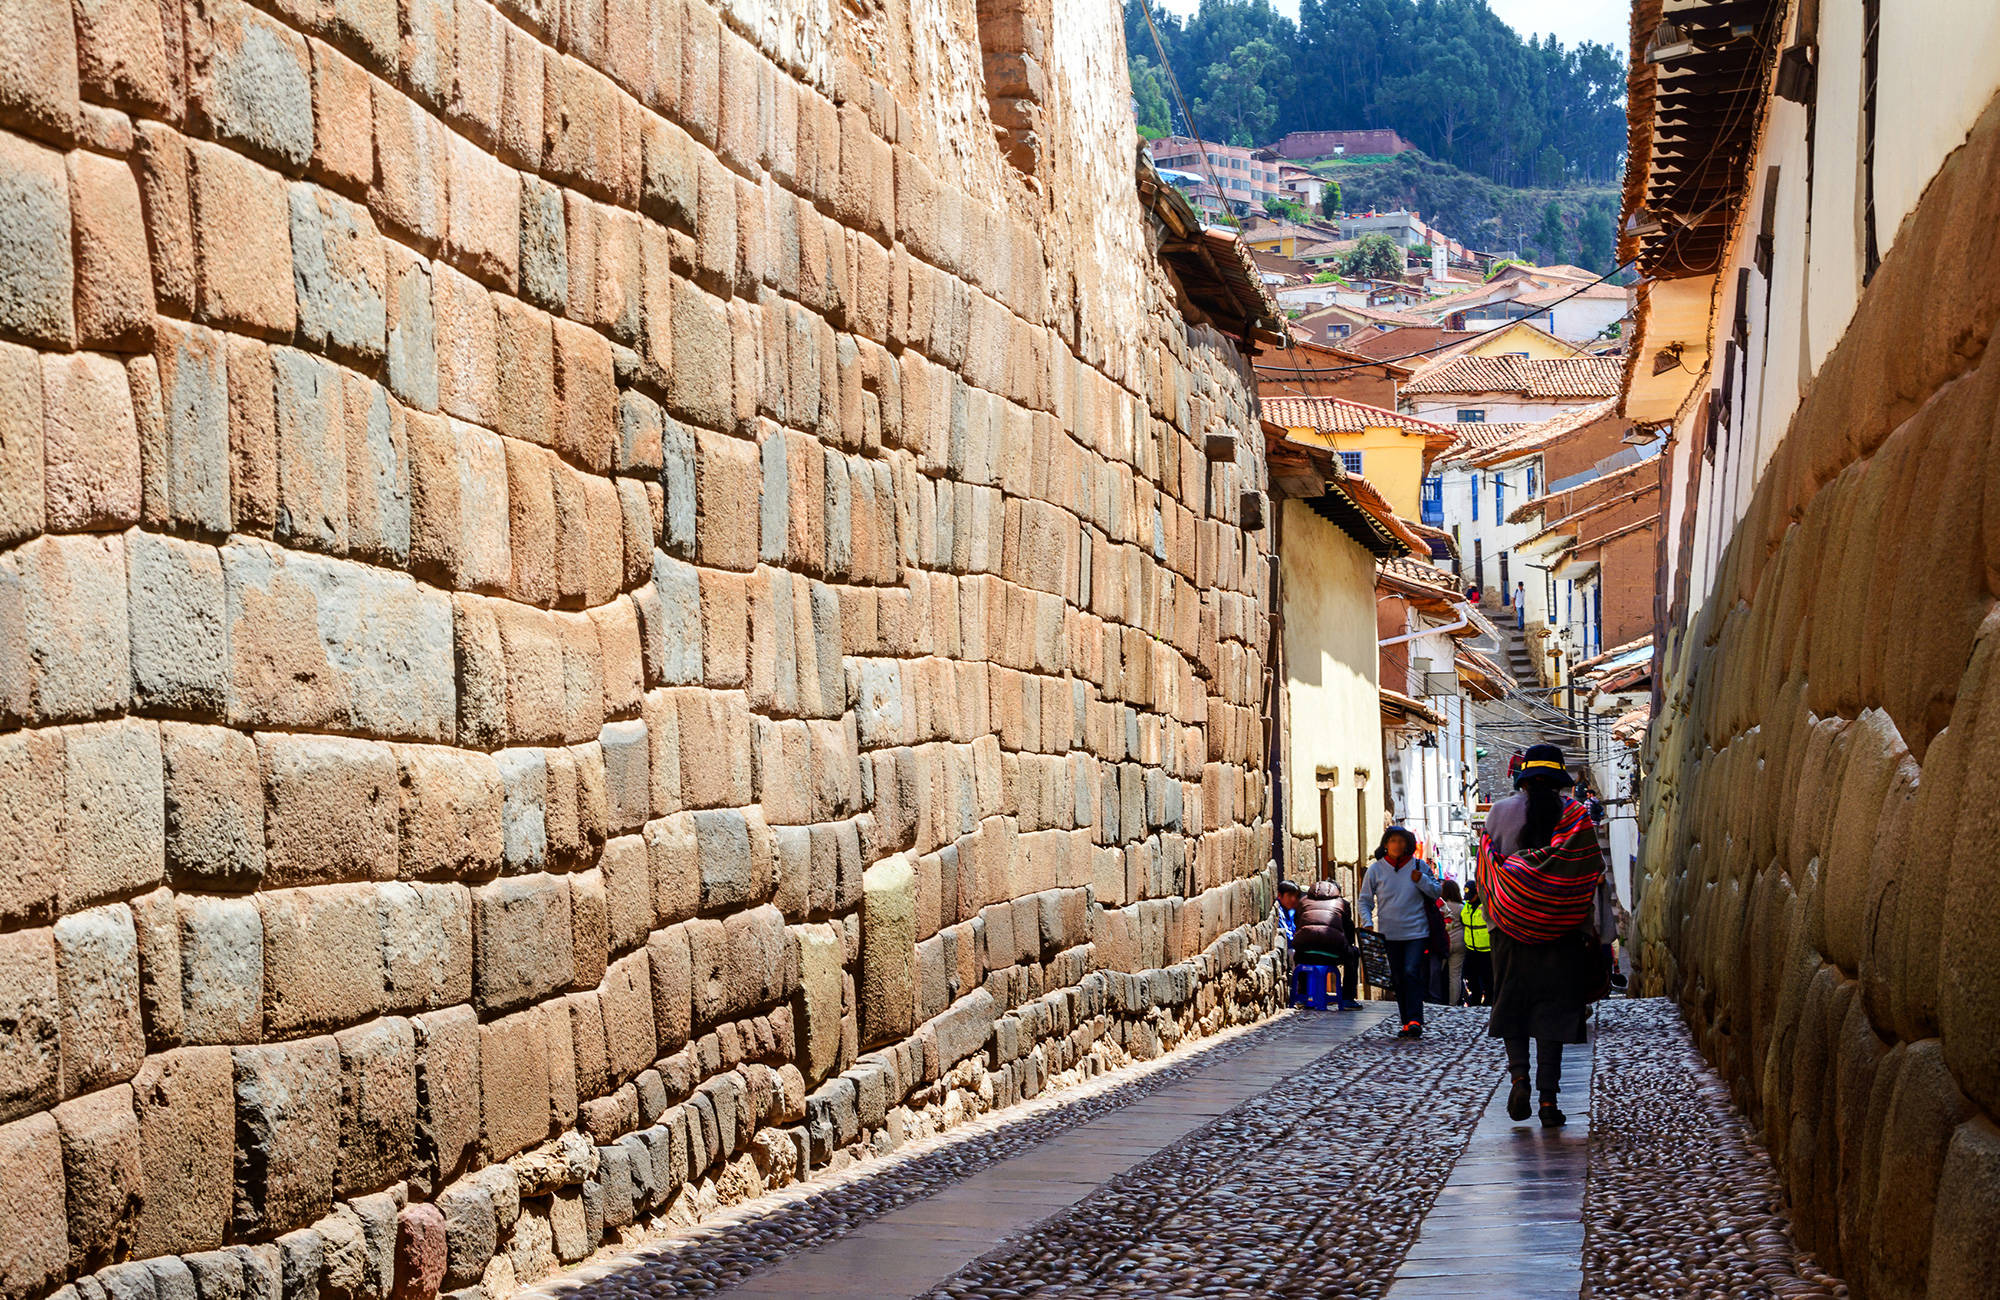 cuzco-peru-narrow-street-cover